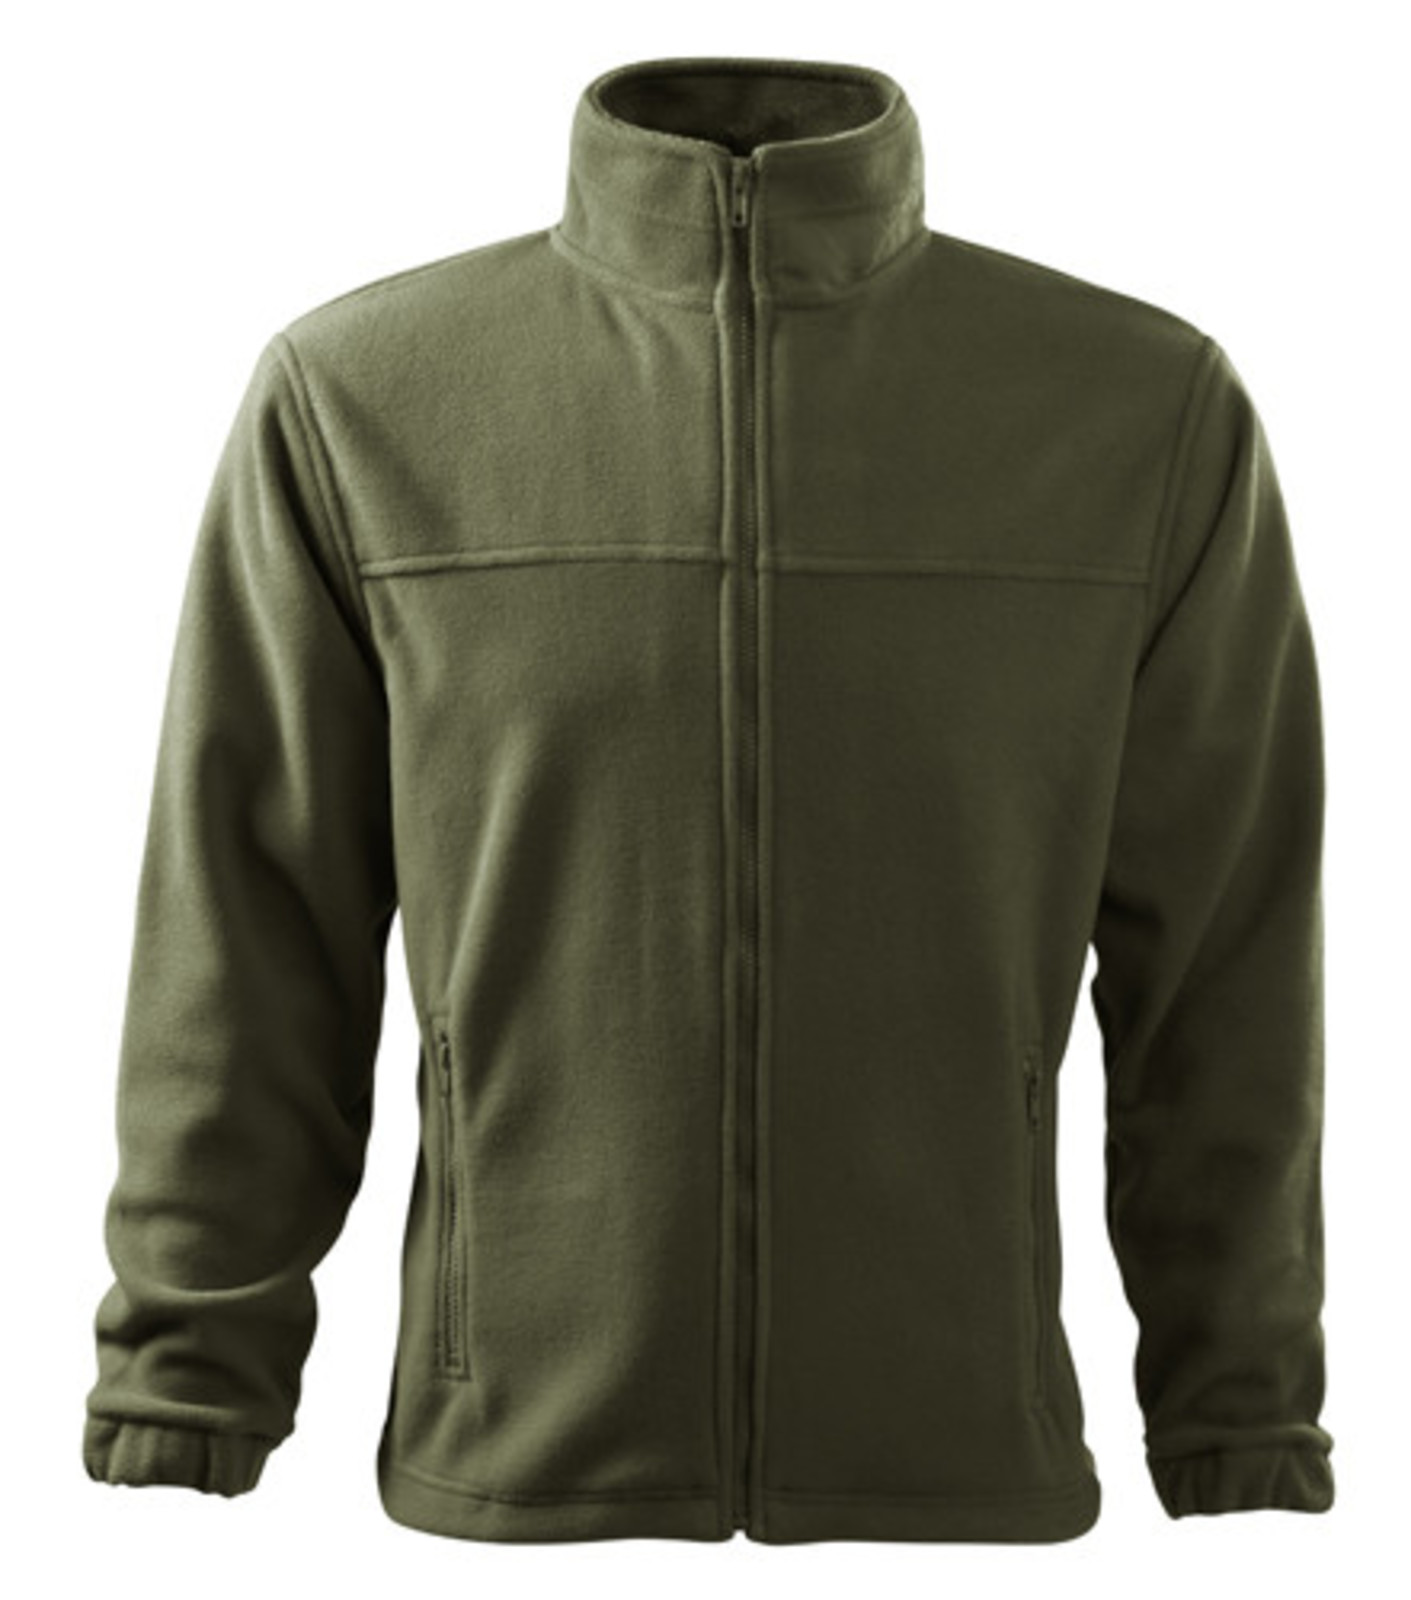 Pánska fleece mikina Rimeck Jacket 501 - veľkosť: XXL, farba: military